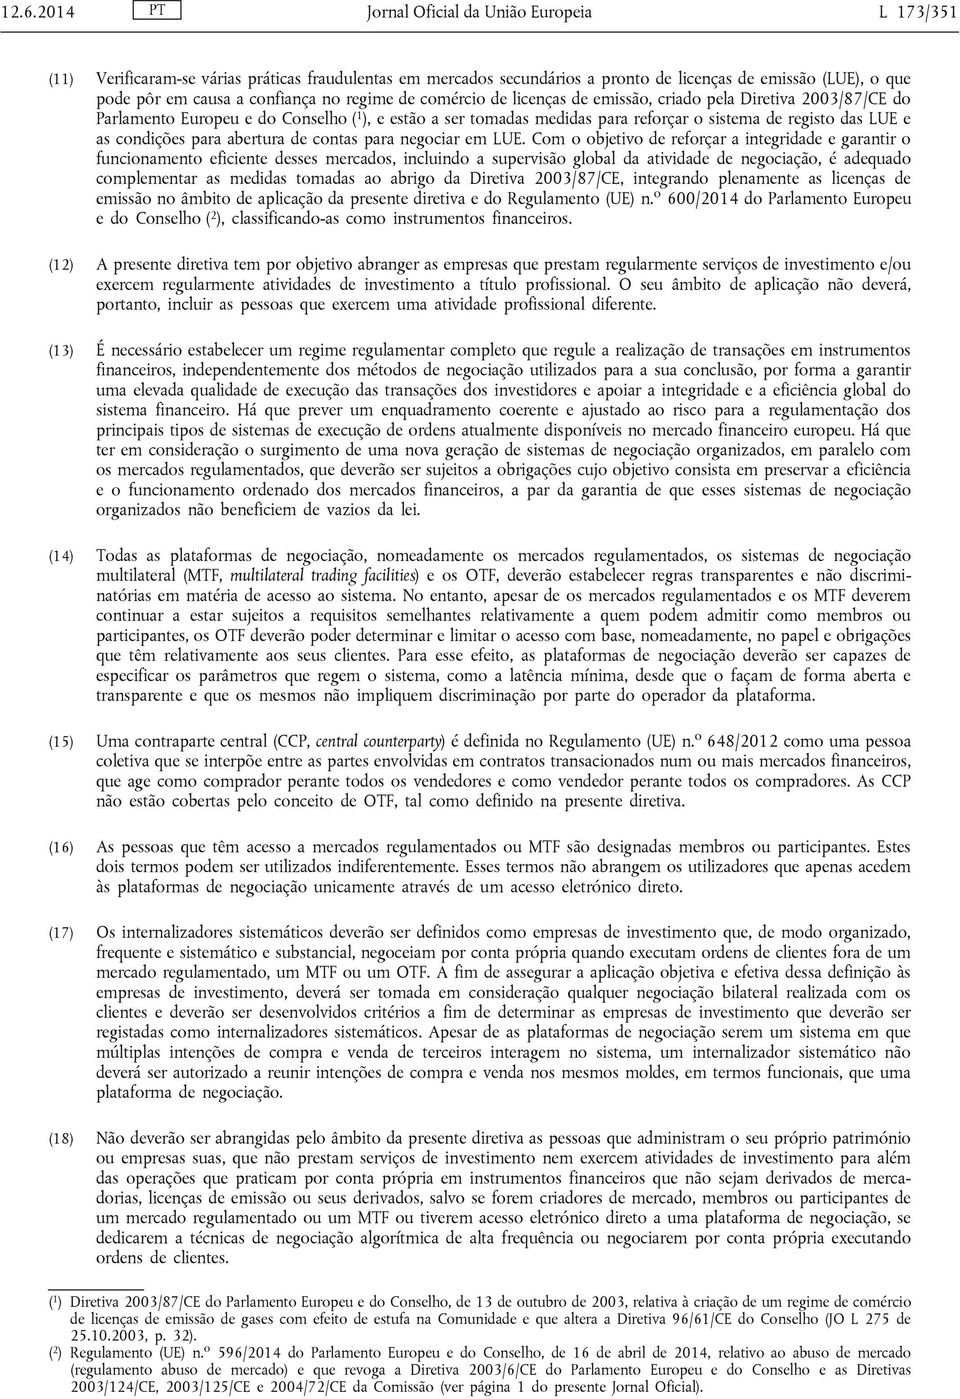 LUE e as condições para abertura de contas para negociar em LUE.